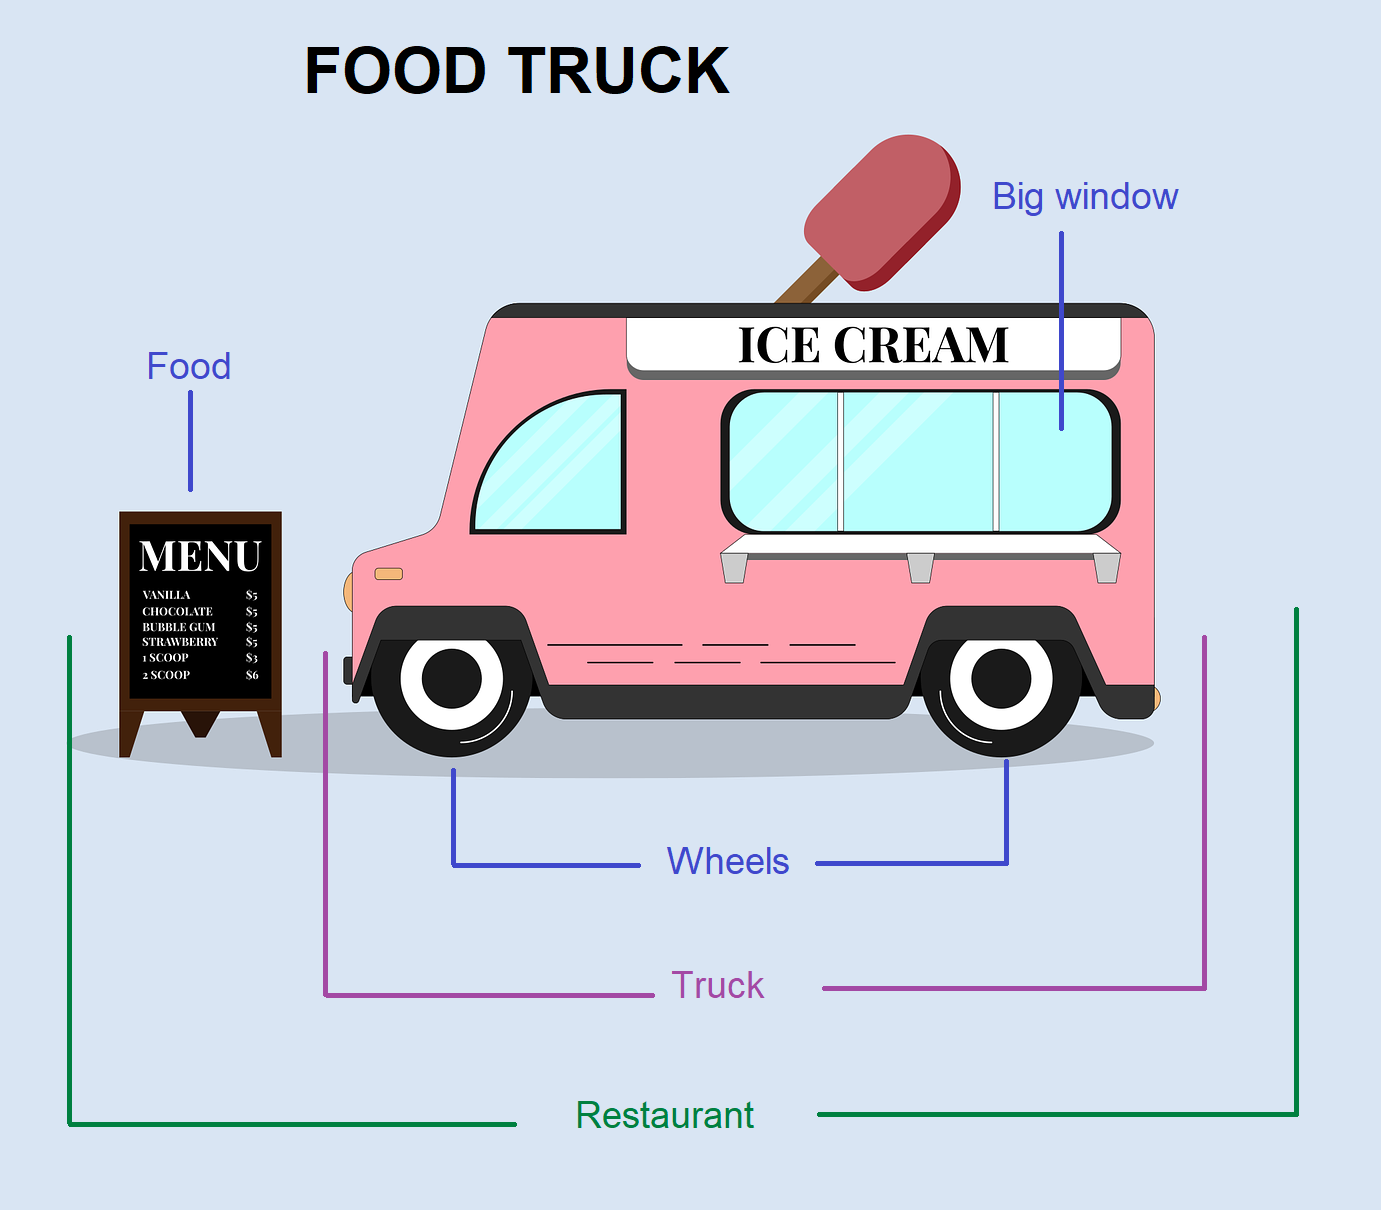 En la imagen aparece un food truck, en el que destacan sus características principales. Se resalta que es un camión convertido en restaurante, que mantiene sus ruedas, que tiene una gran ventana y el menú en el que se indican las comidas que ofrece